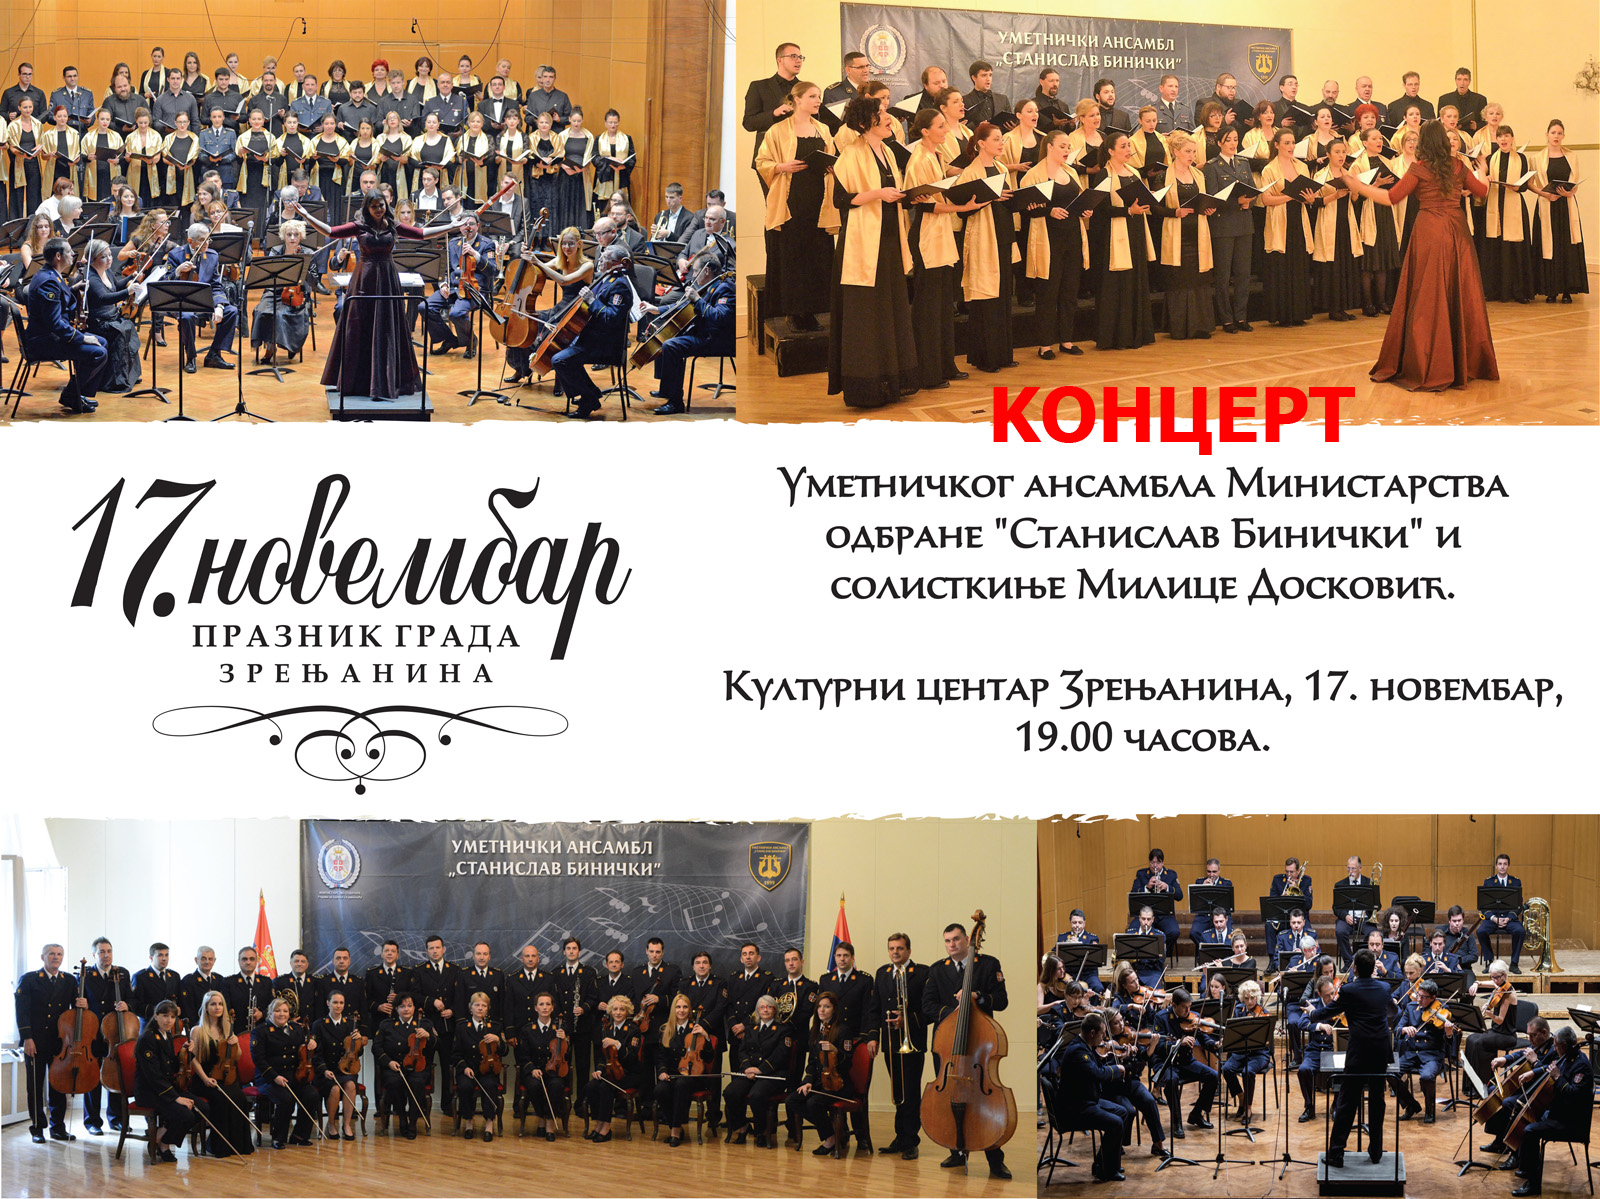 Dan oslobođenja u Prvom svetskom ratu - Praznik grada Zrenjanina, večeras koncert ansambla ''Stanislav Binički''